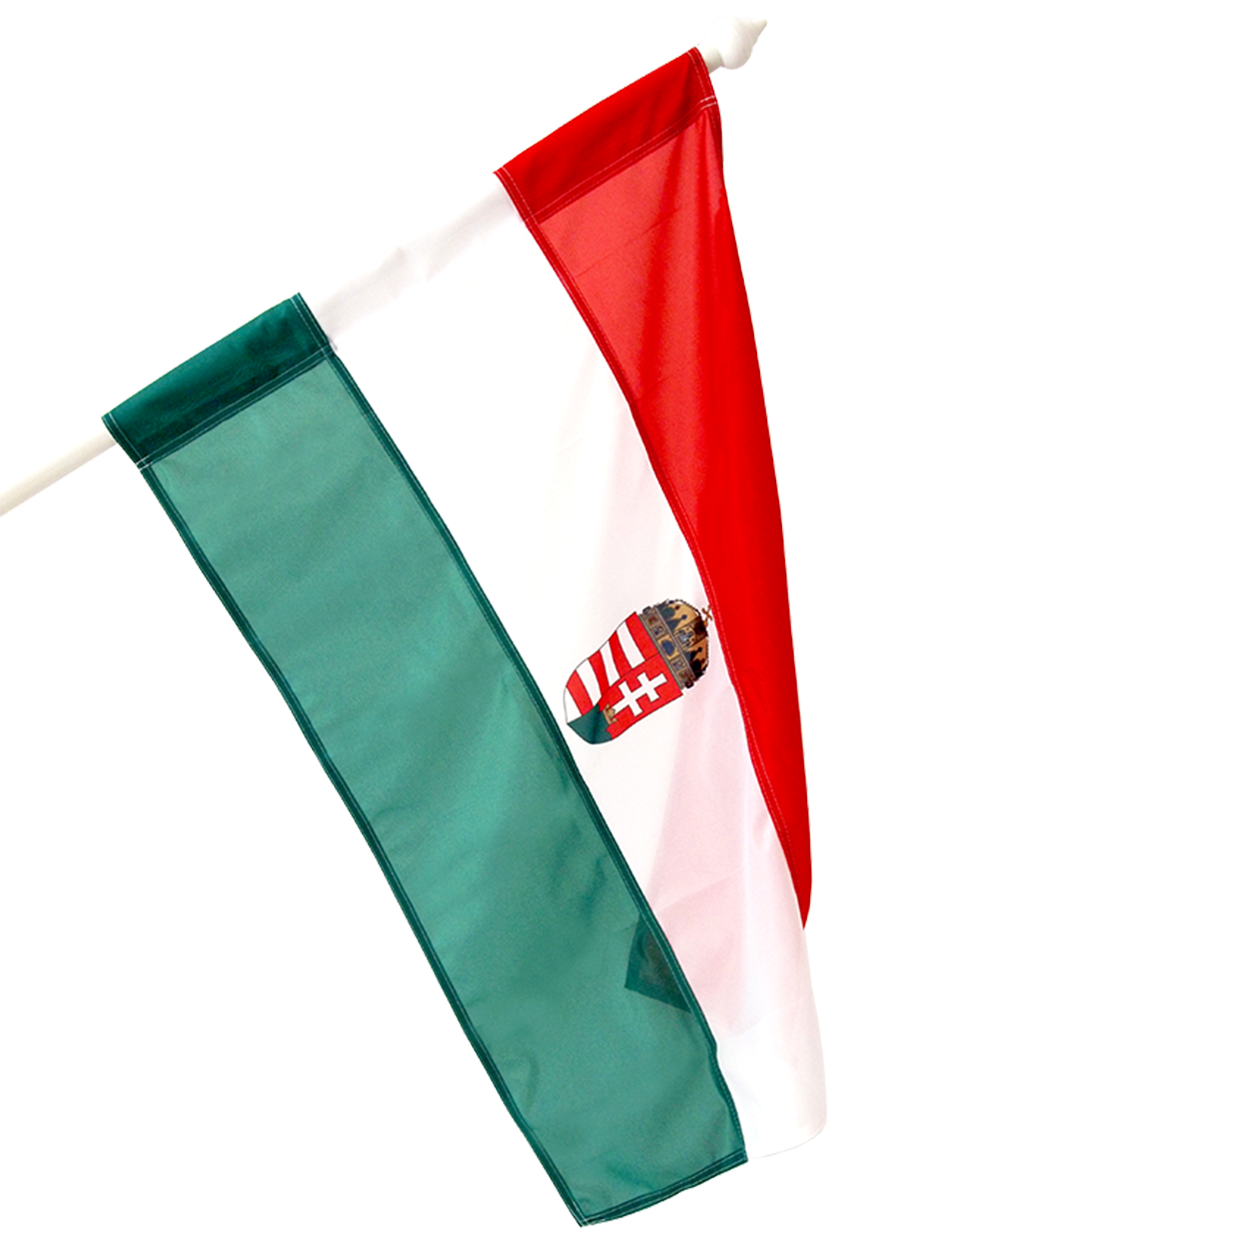 címeres magyar zászló